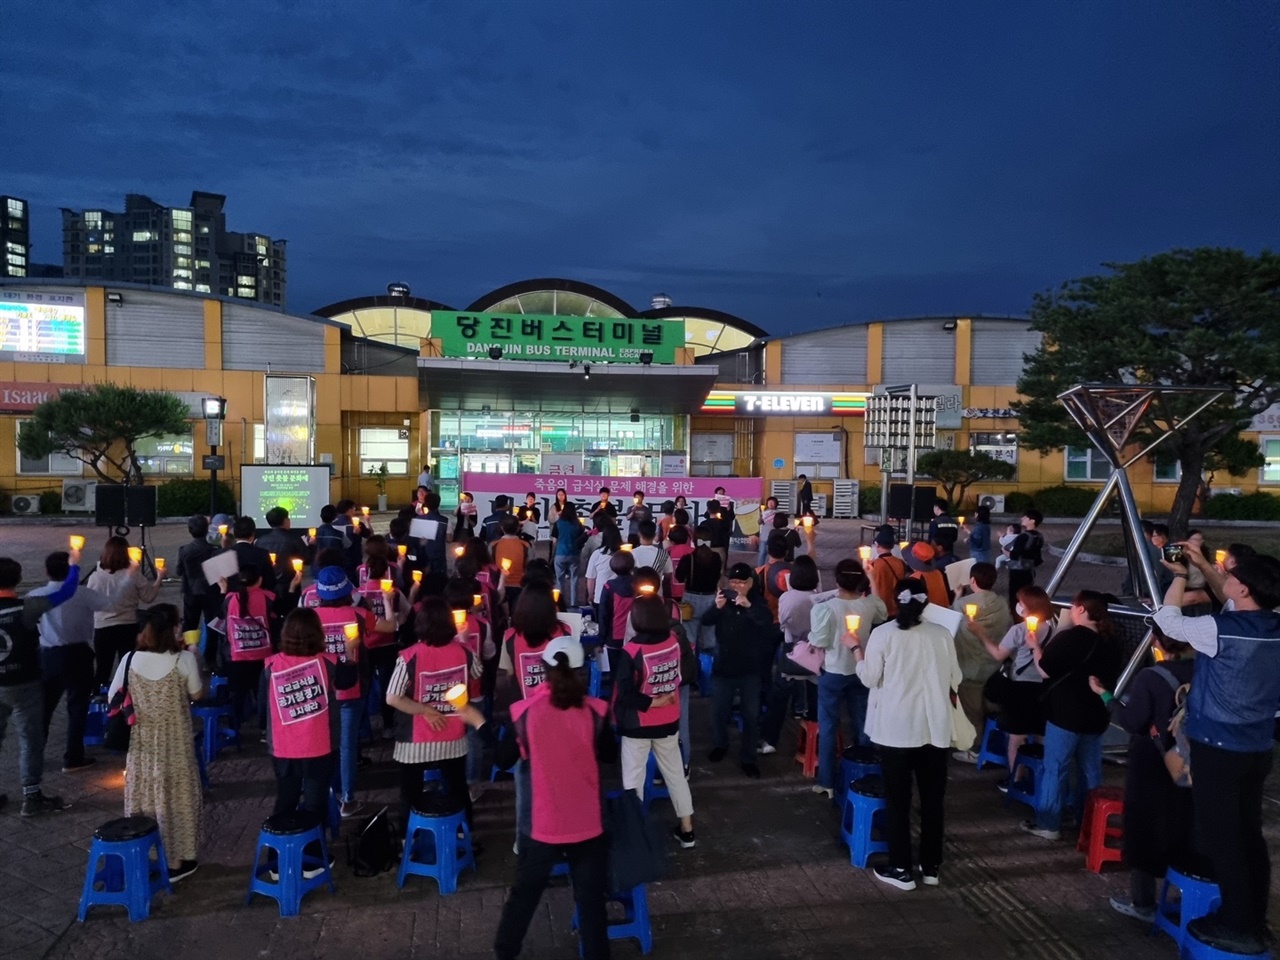 지난 31일 충남 당진 터미널 앞. 100여명의 당진 시민들이 학교급식실 노동자들의 근무환경을 개선하라며 촛불 집회를 진행했다. 